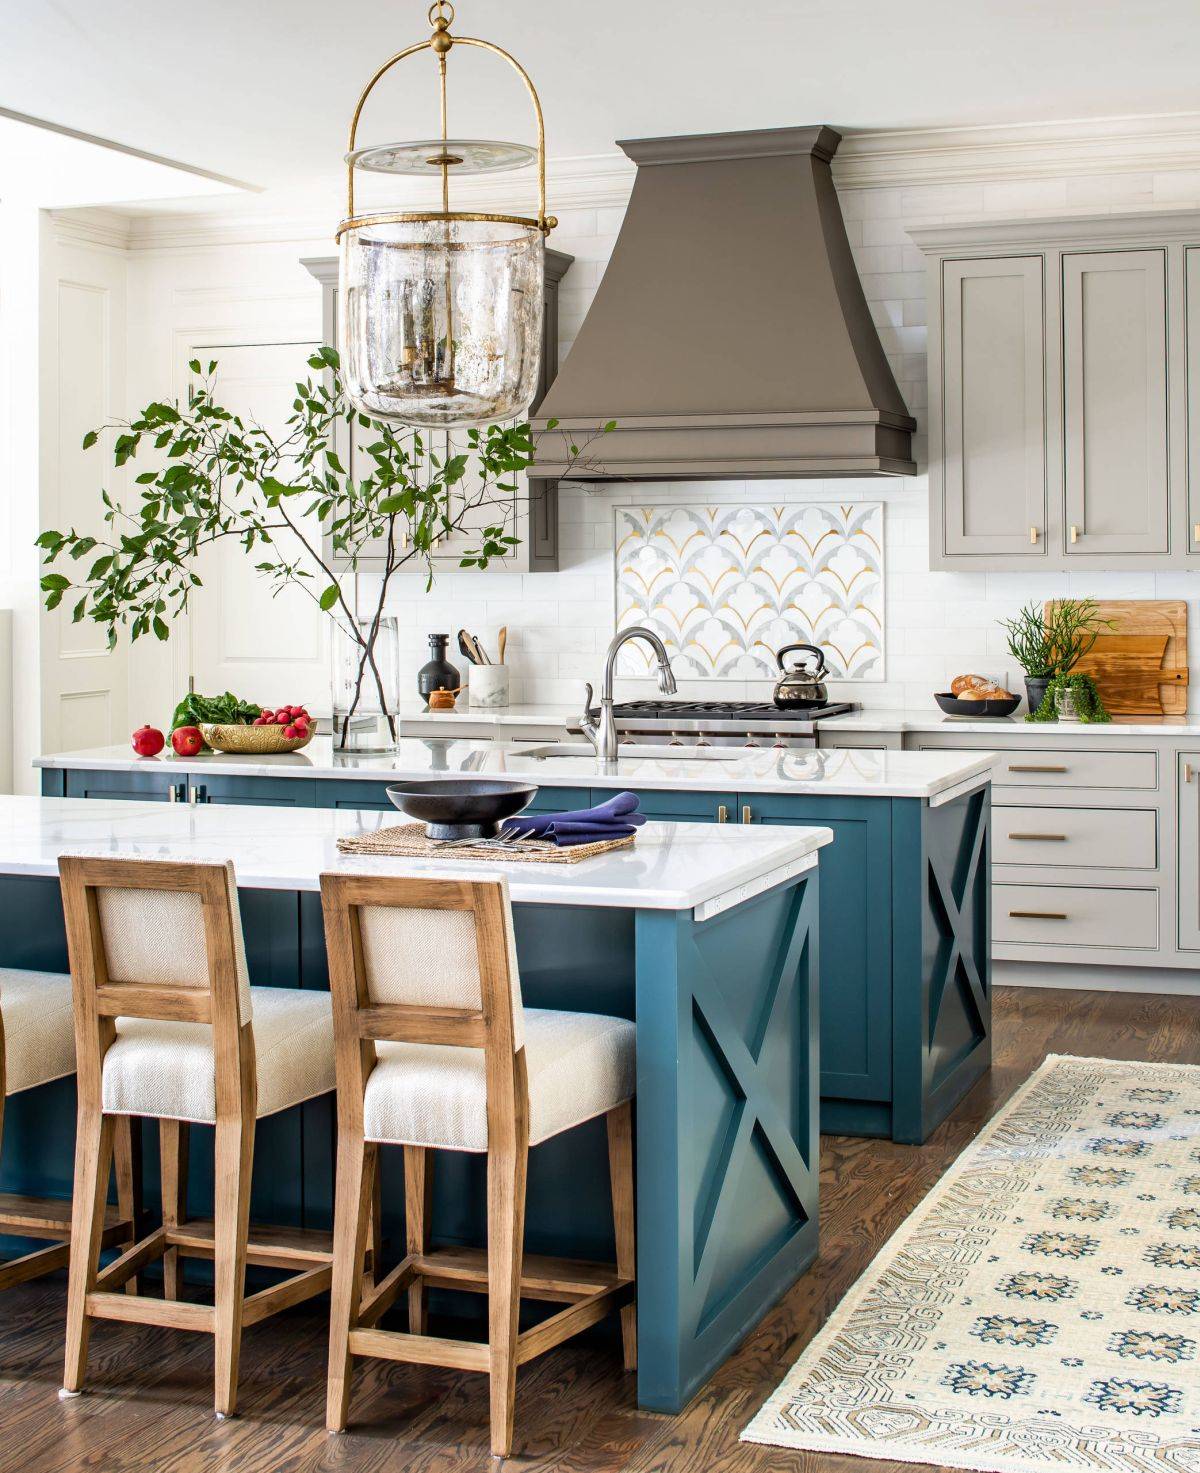 Đảo bếp đôi màu xanh lam với mặt bàn màu trắng hoàn toàn phù hợp cho nhà bếp theo phong cách trang trại hiện đại.